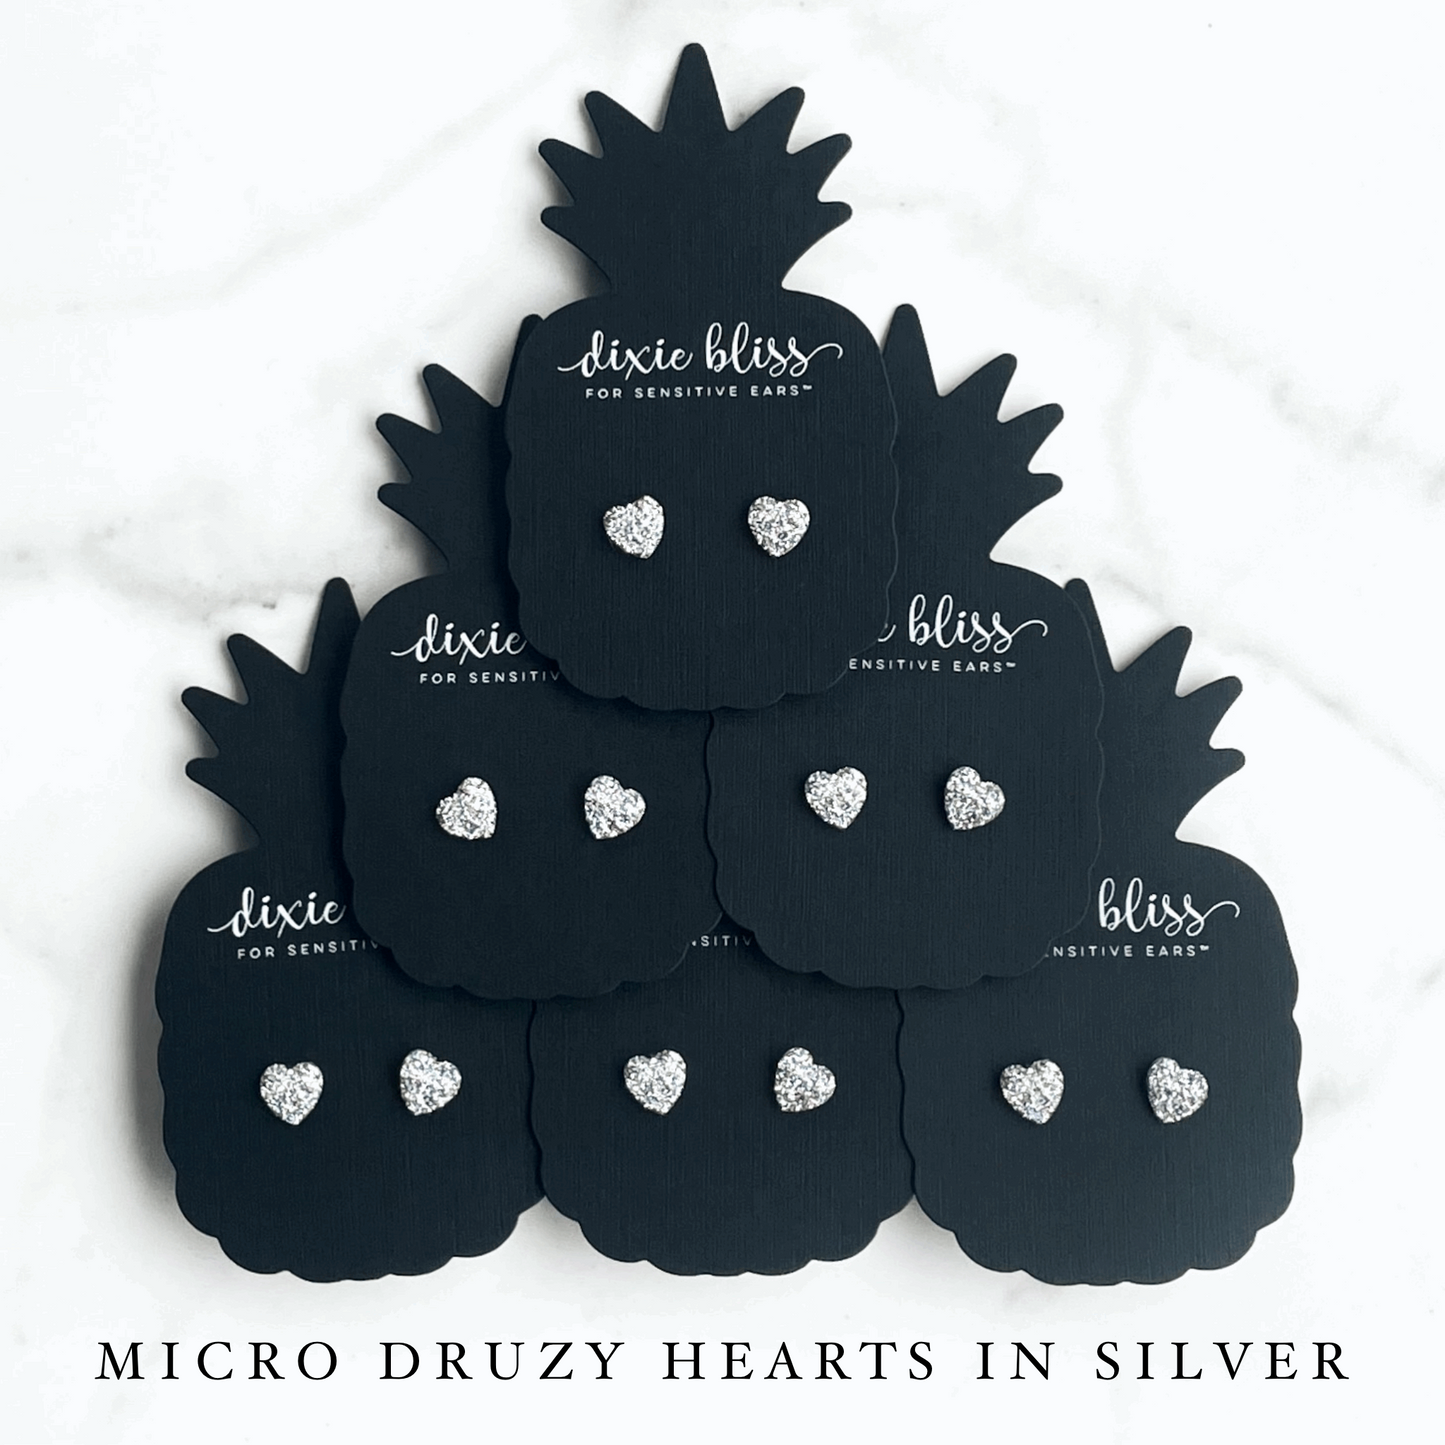 Micro Druzy Hearts in Silver